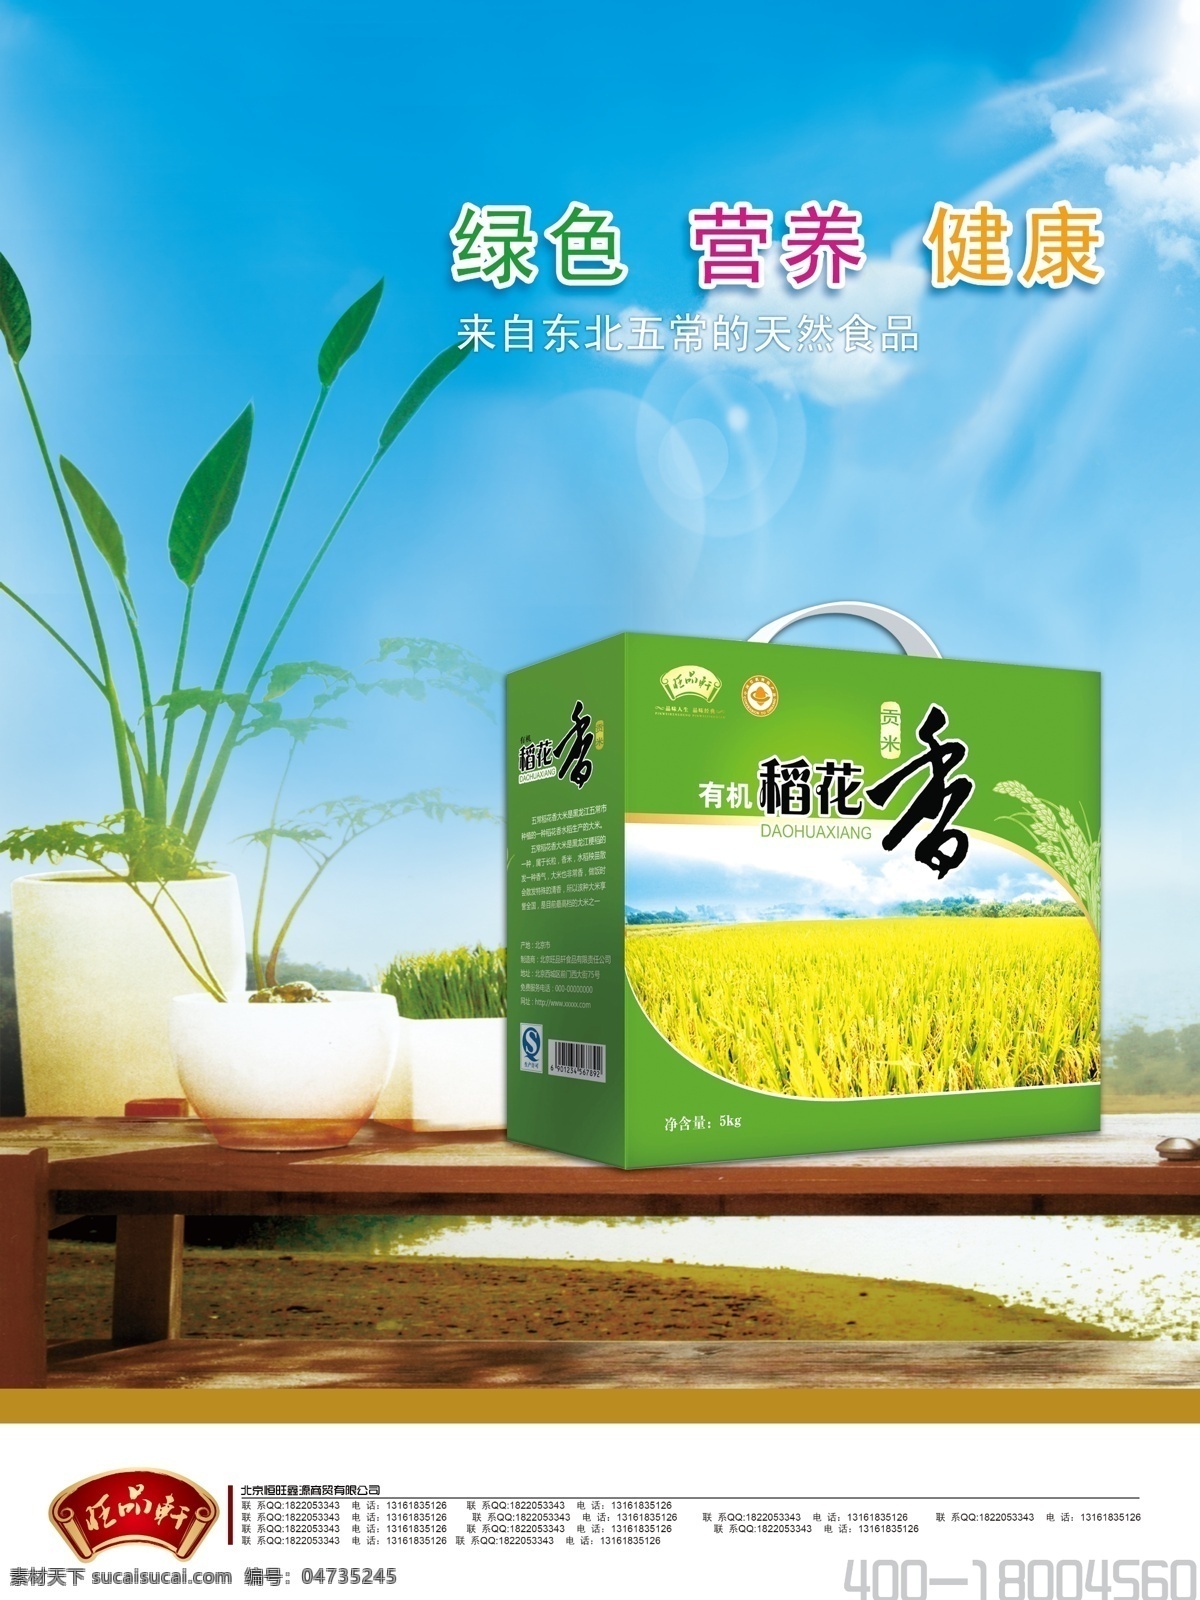 五常稻花香 贡米 五常稻花香米 绿色食品海报 大米海报 广告设计模板 源文件